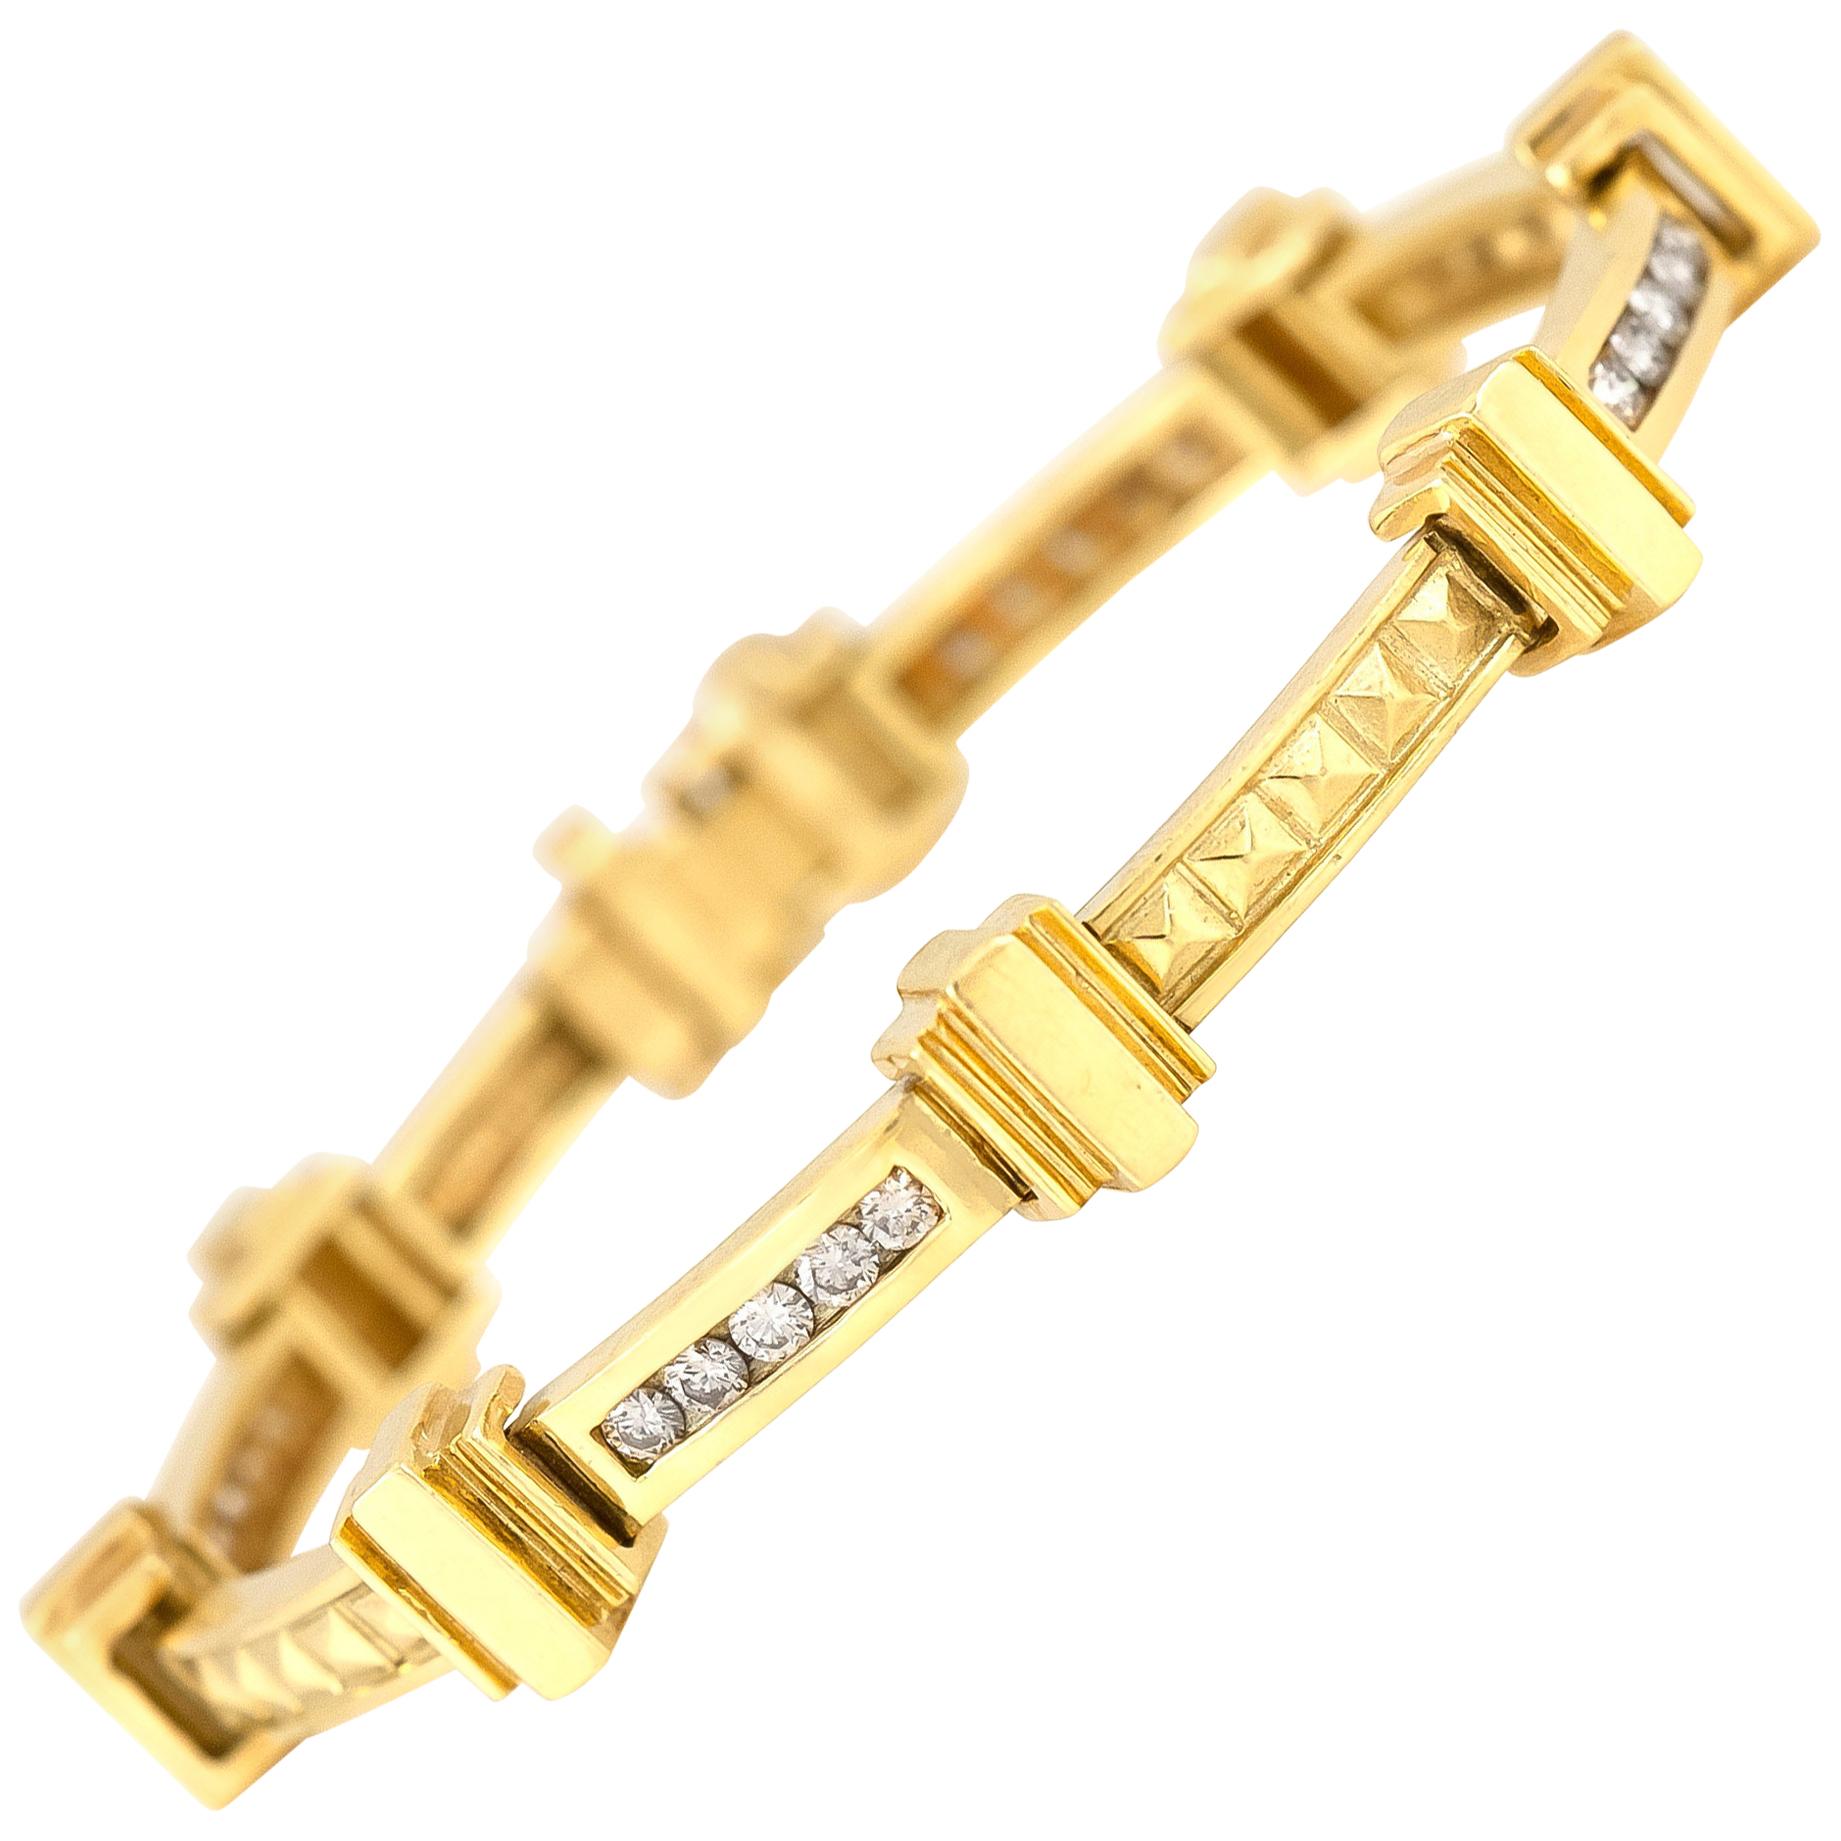 Vintage 1980s Gold Roman Columns Bracelet with Diamonds